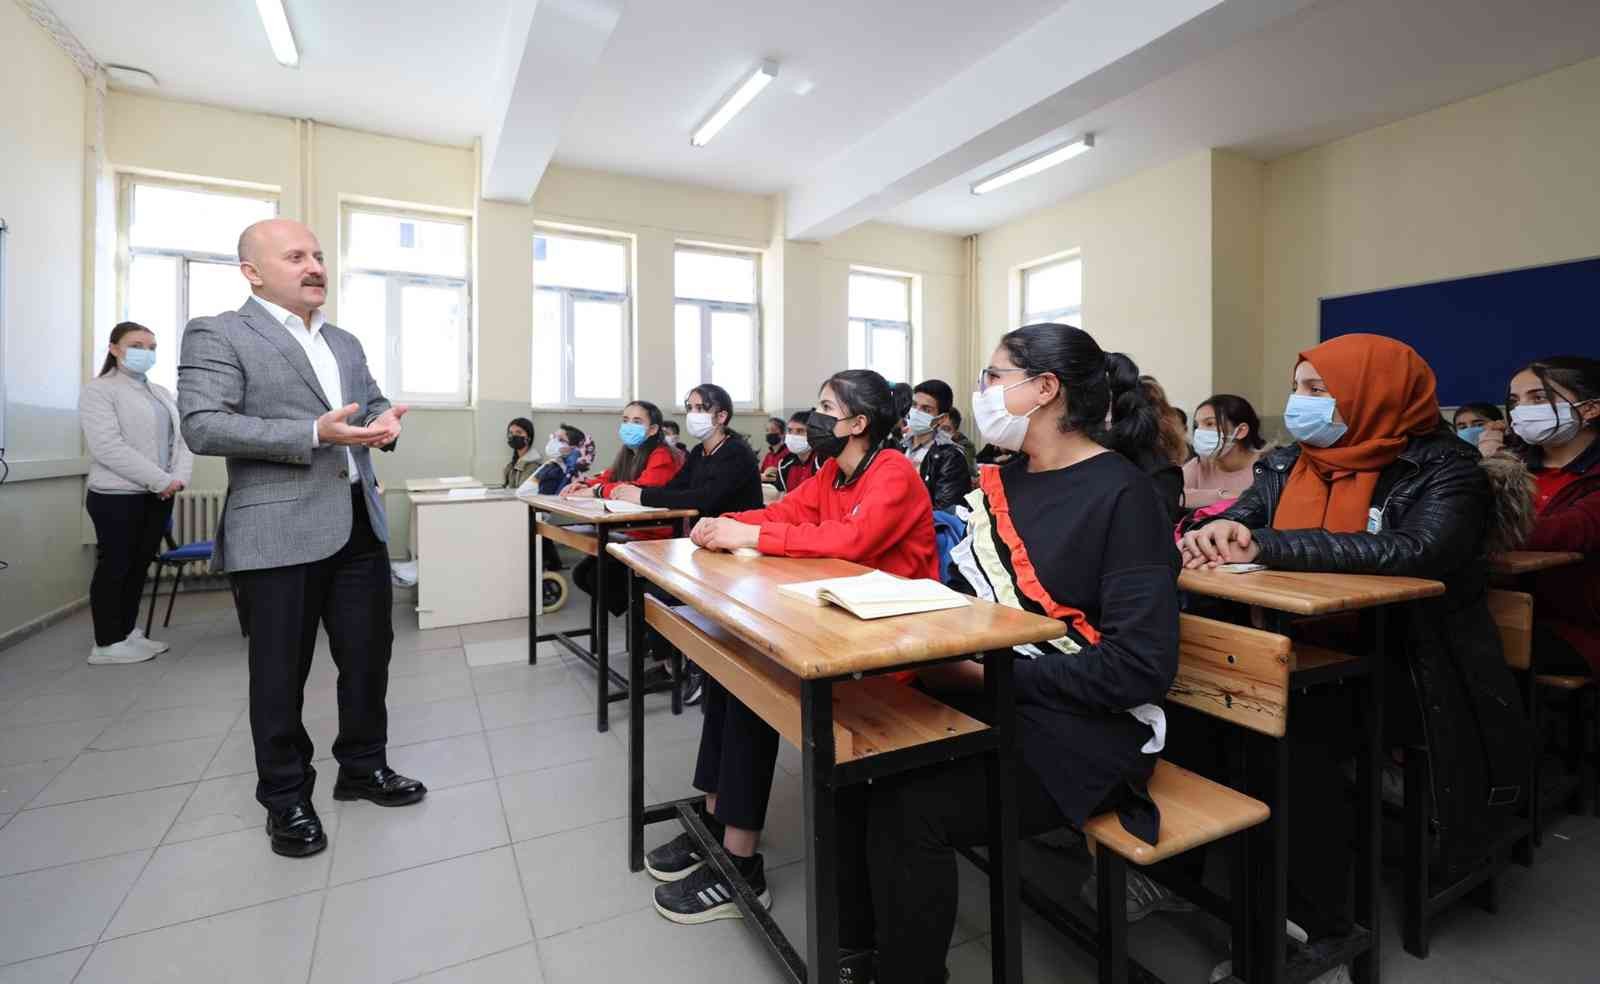 Ağrı Valisi Varol, Taşlıçay Anadolu Lisesini ziyaret etti #agri